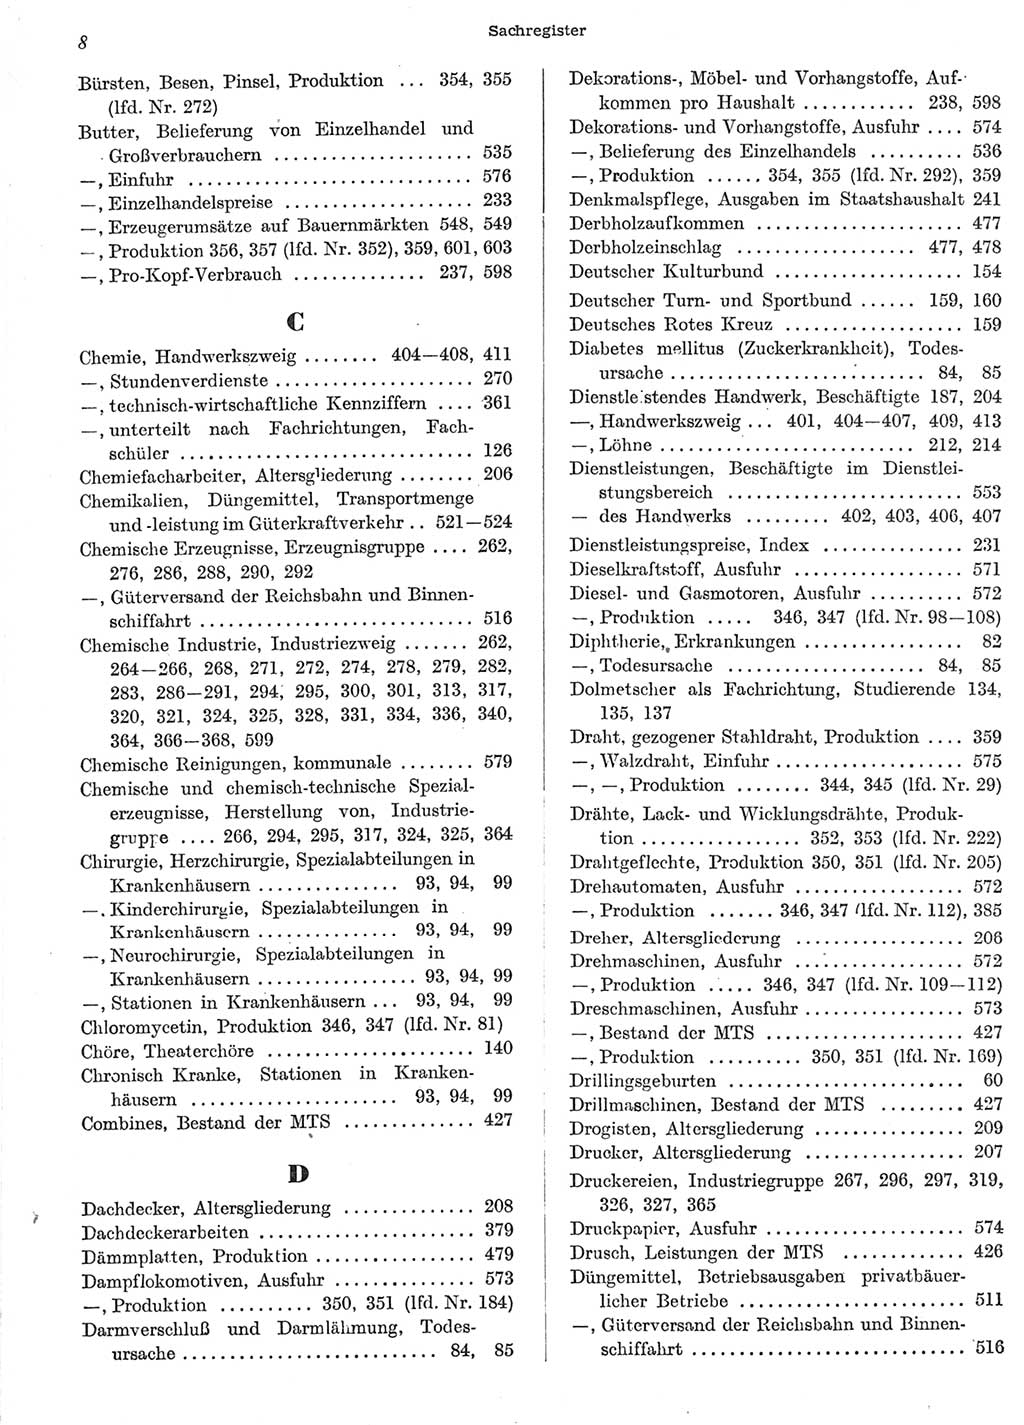 Statistisches Jahrbuch der Deutschen Demokratischen Republik (DDR) 1958, Seite 8 (Stat. Jb. DDR 1958, S. 8)